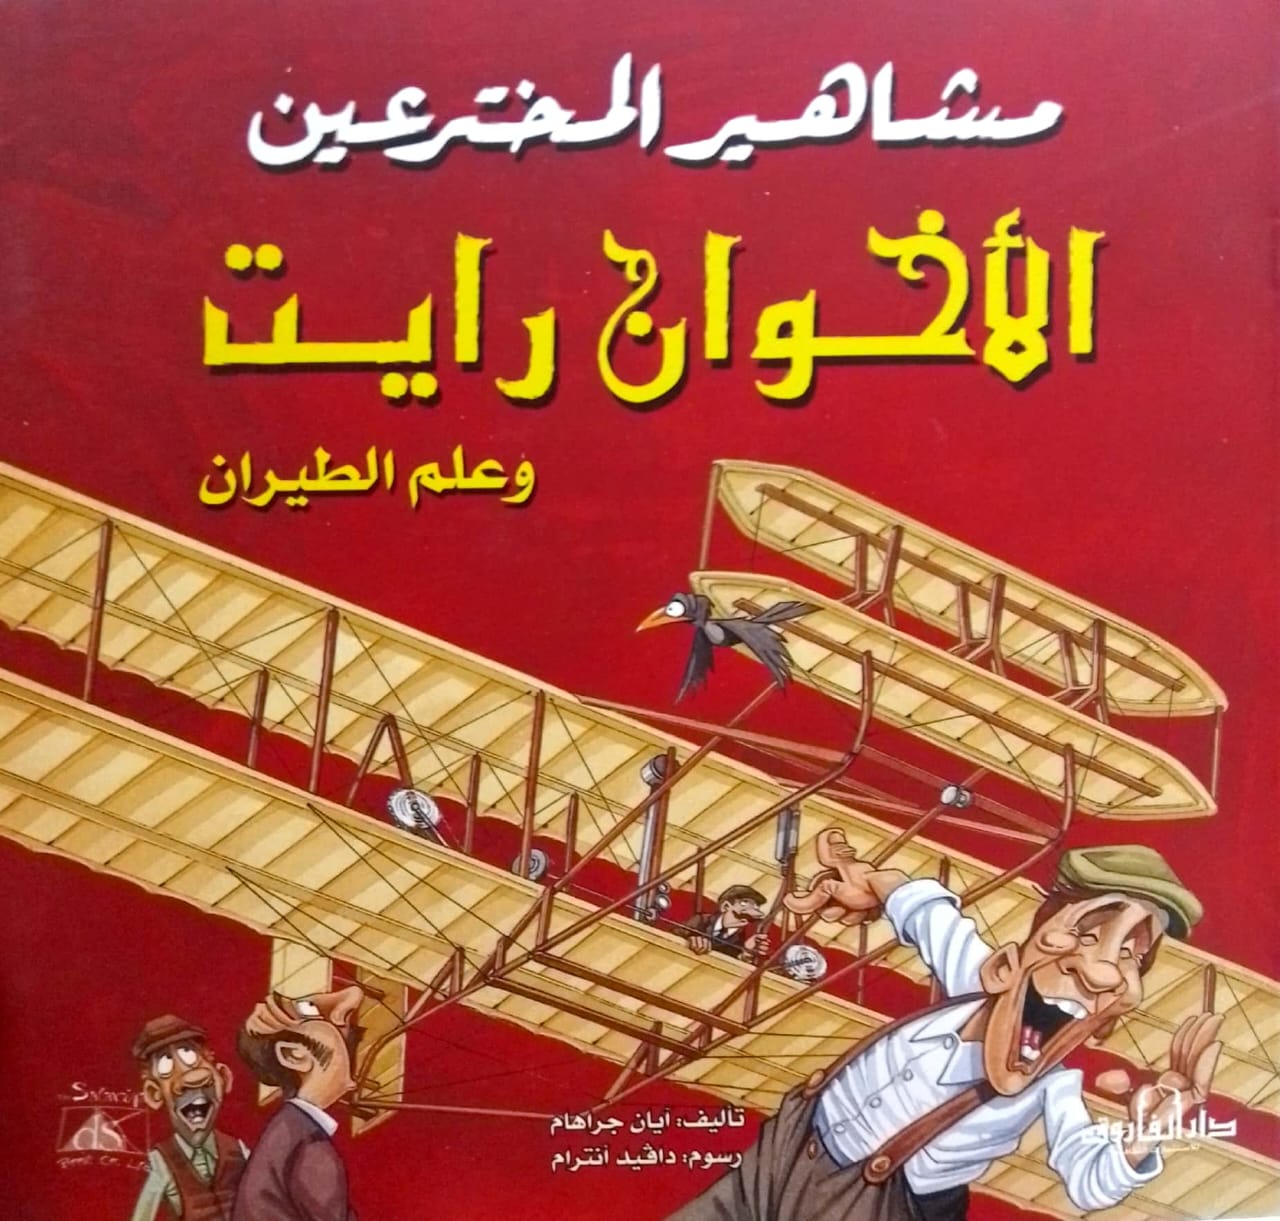 الأخوان رايت وعلم الطيران - سلسلة مشاهير المخترعين